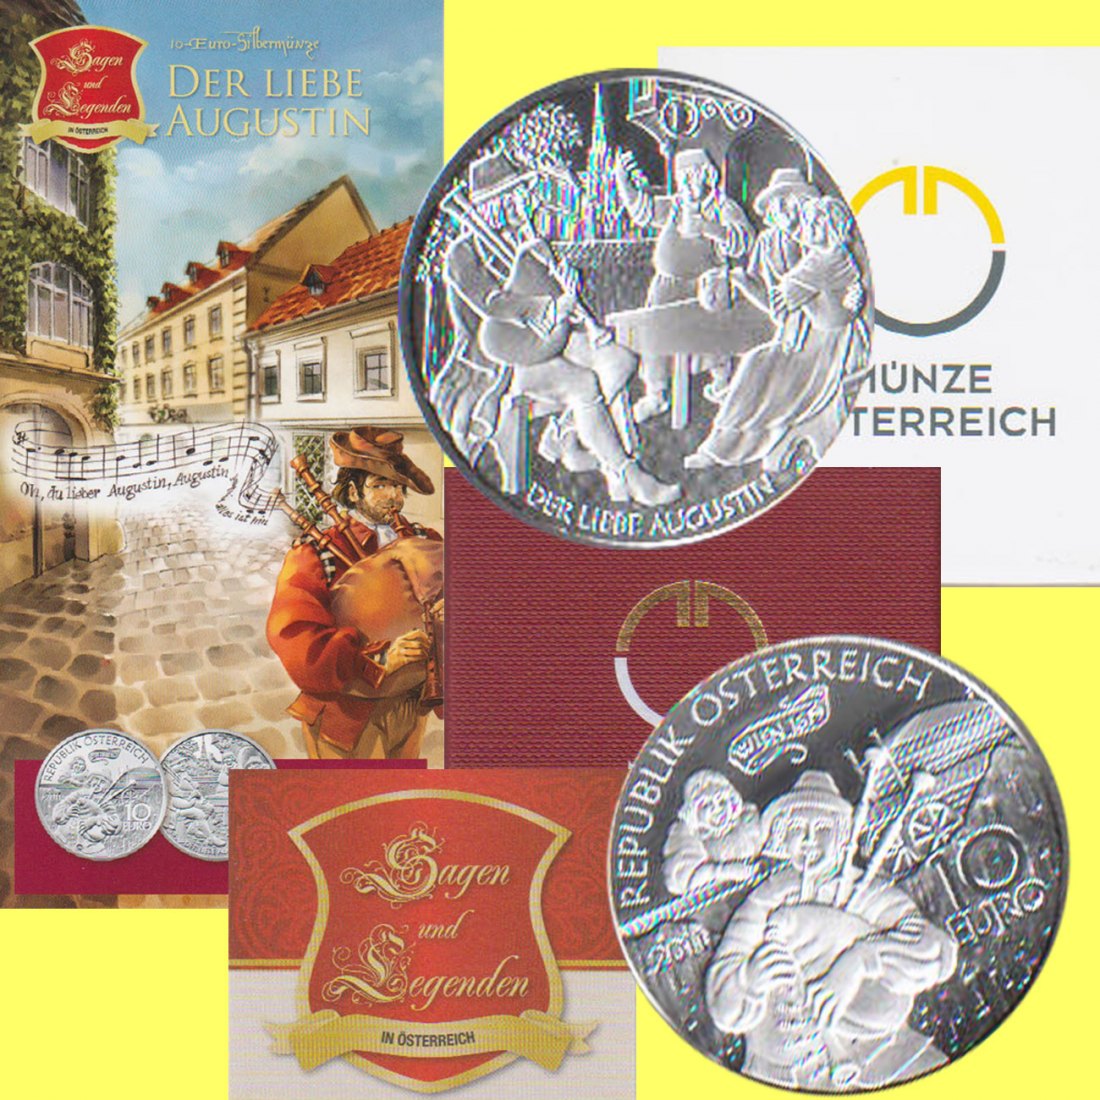  Offiz. 10 Euro Silbermünze Österreich *Der liebe Augustin* 2011 *PP* max 40.000St!   